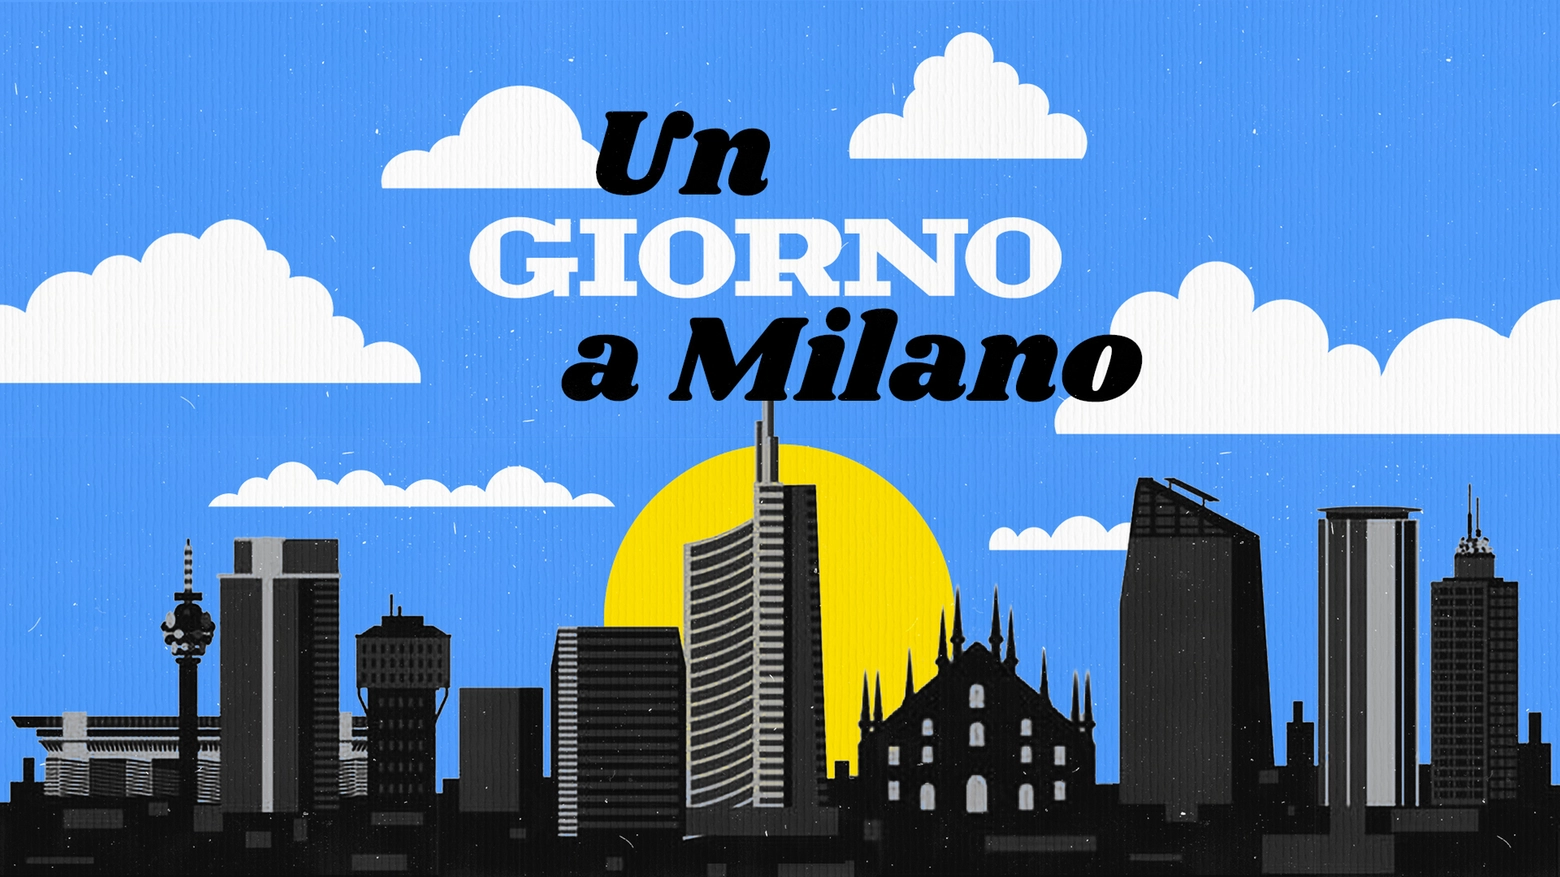 Il comico e performer siciliano parla del rapporto con la città di Milano. Come nascono i tormentoni che lo hanno reso famoso in tv e sul web